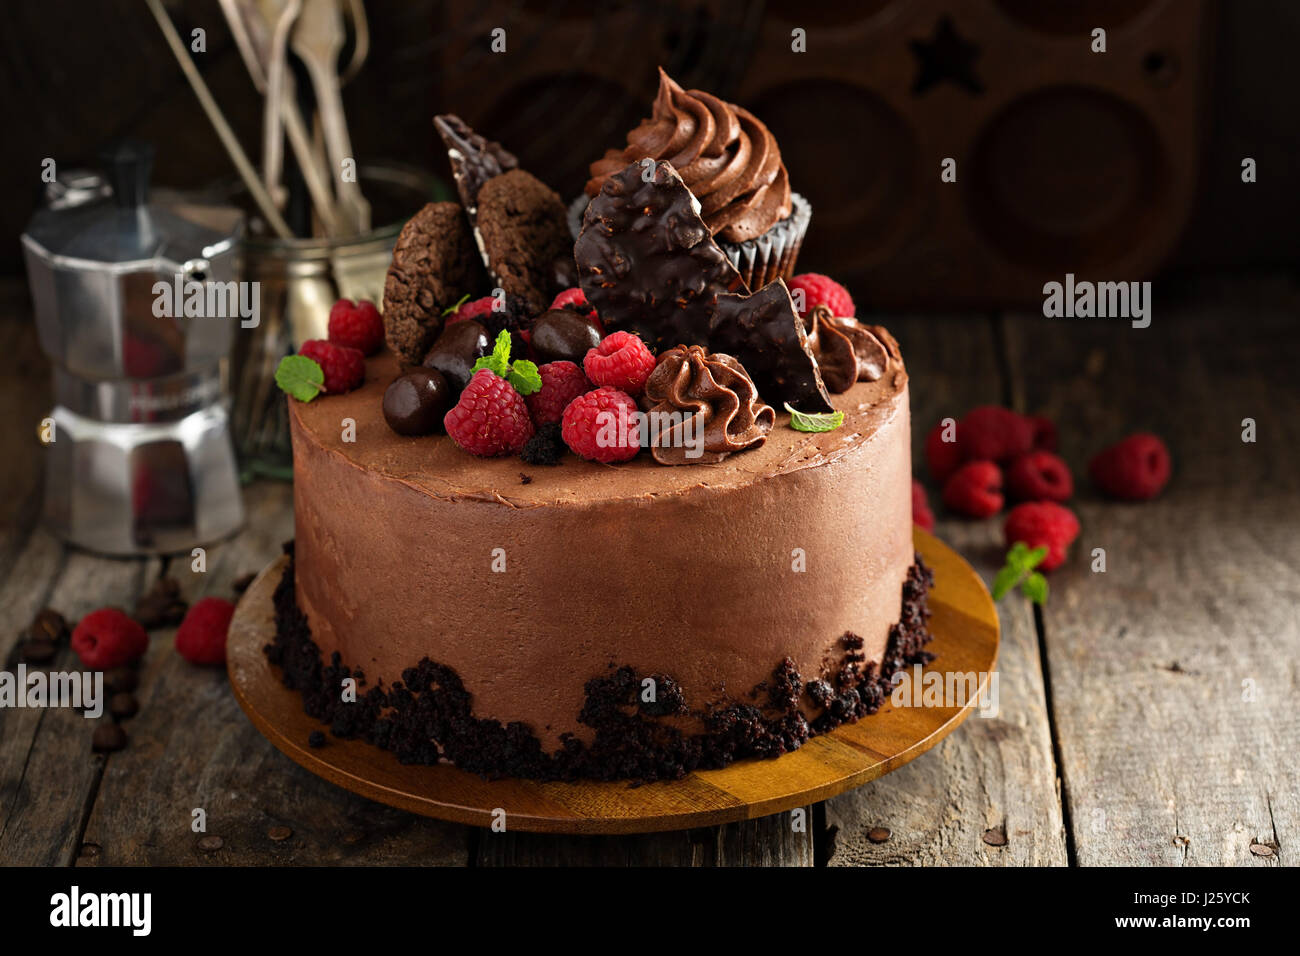 Decorazioni Per Torte Immagini E Fotos Stock Alamy